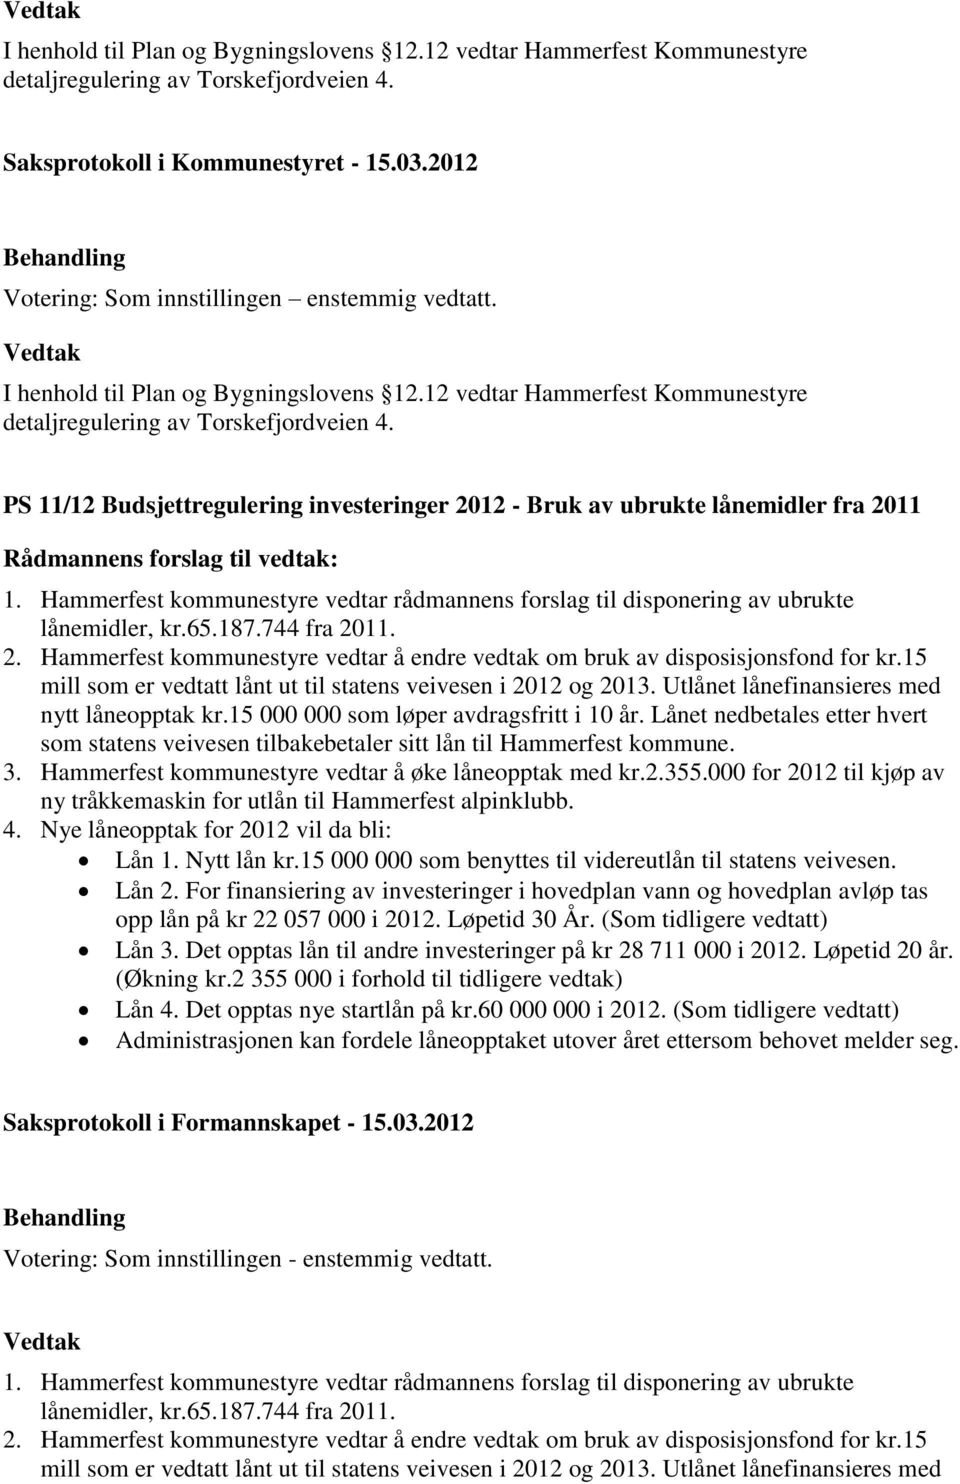 Hammerfest kommunestyre vedtar rådmannens forslag til disponering av ubrukte lånemidler, kr.65.187.744 fra 2011. 2. Hammerfest kommunestyre vedtar å endre vedtak om bruk av disposisjonsfond for kr.